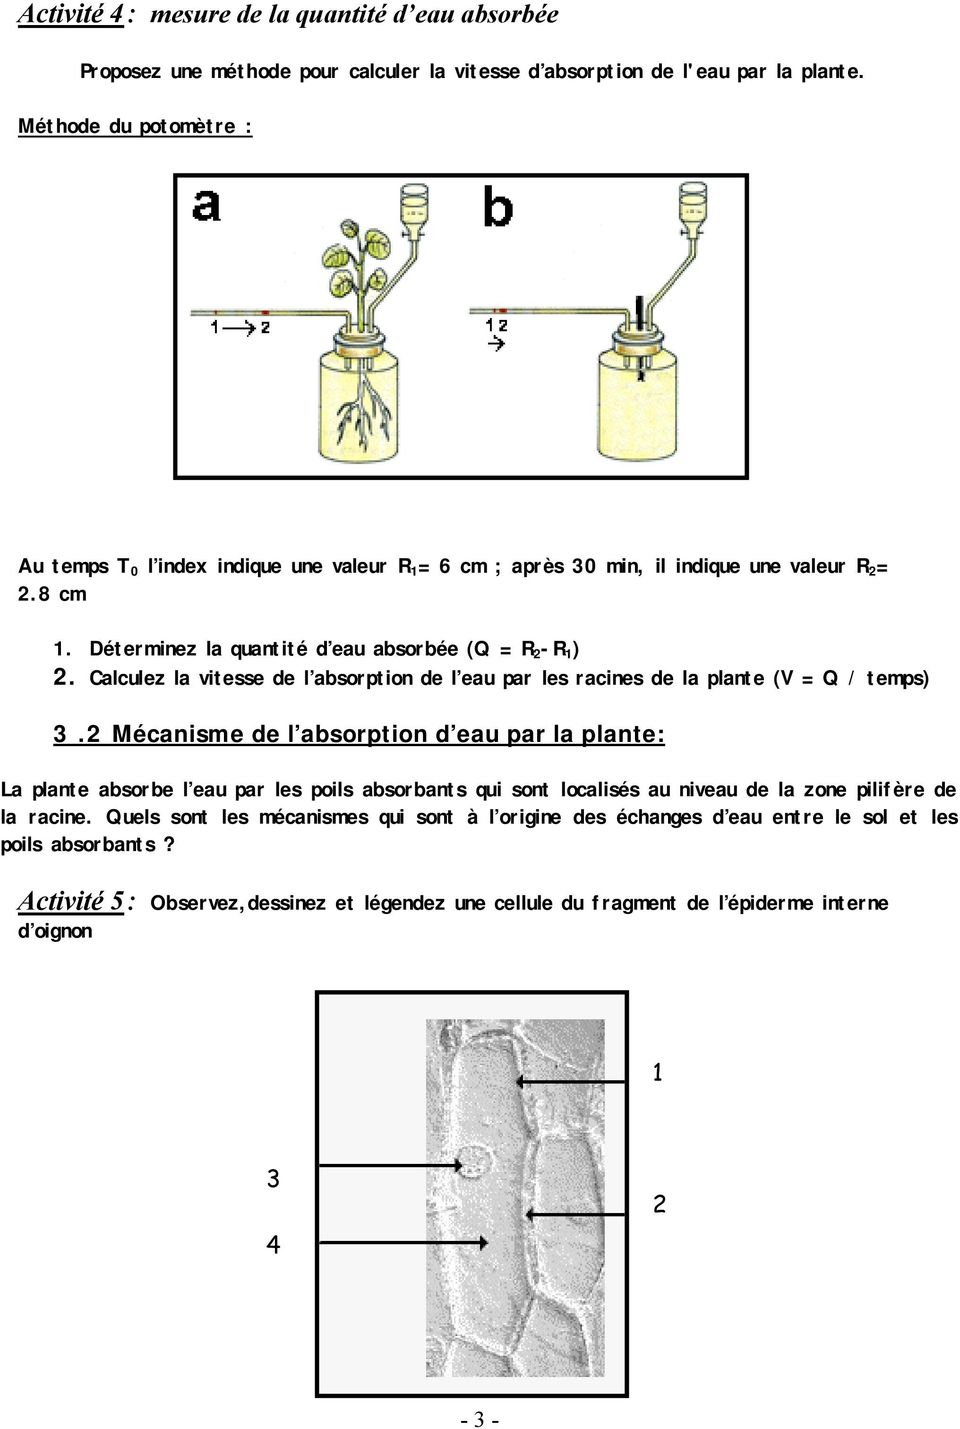 Calculez la vitesse de l absorption de l eau par les racines de la plante (V = Q / temps) 3.